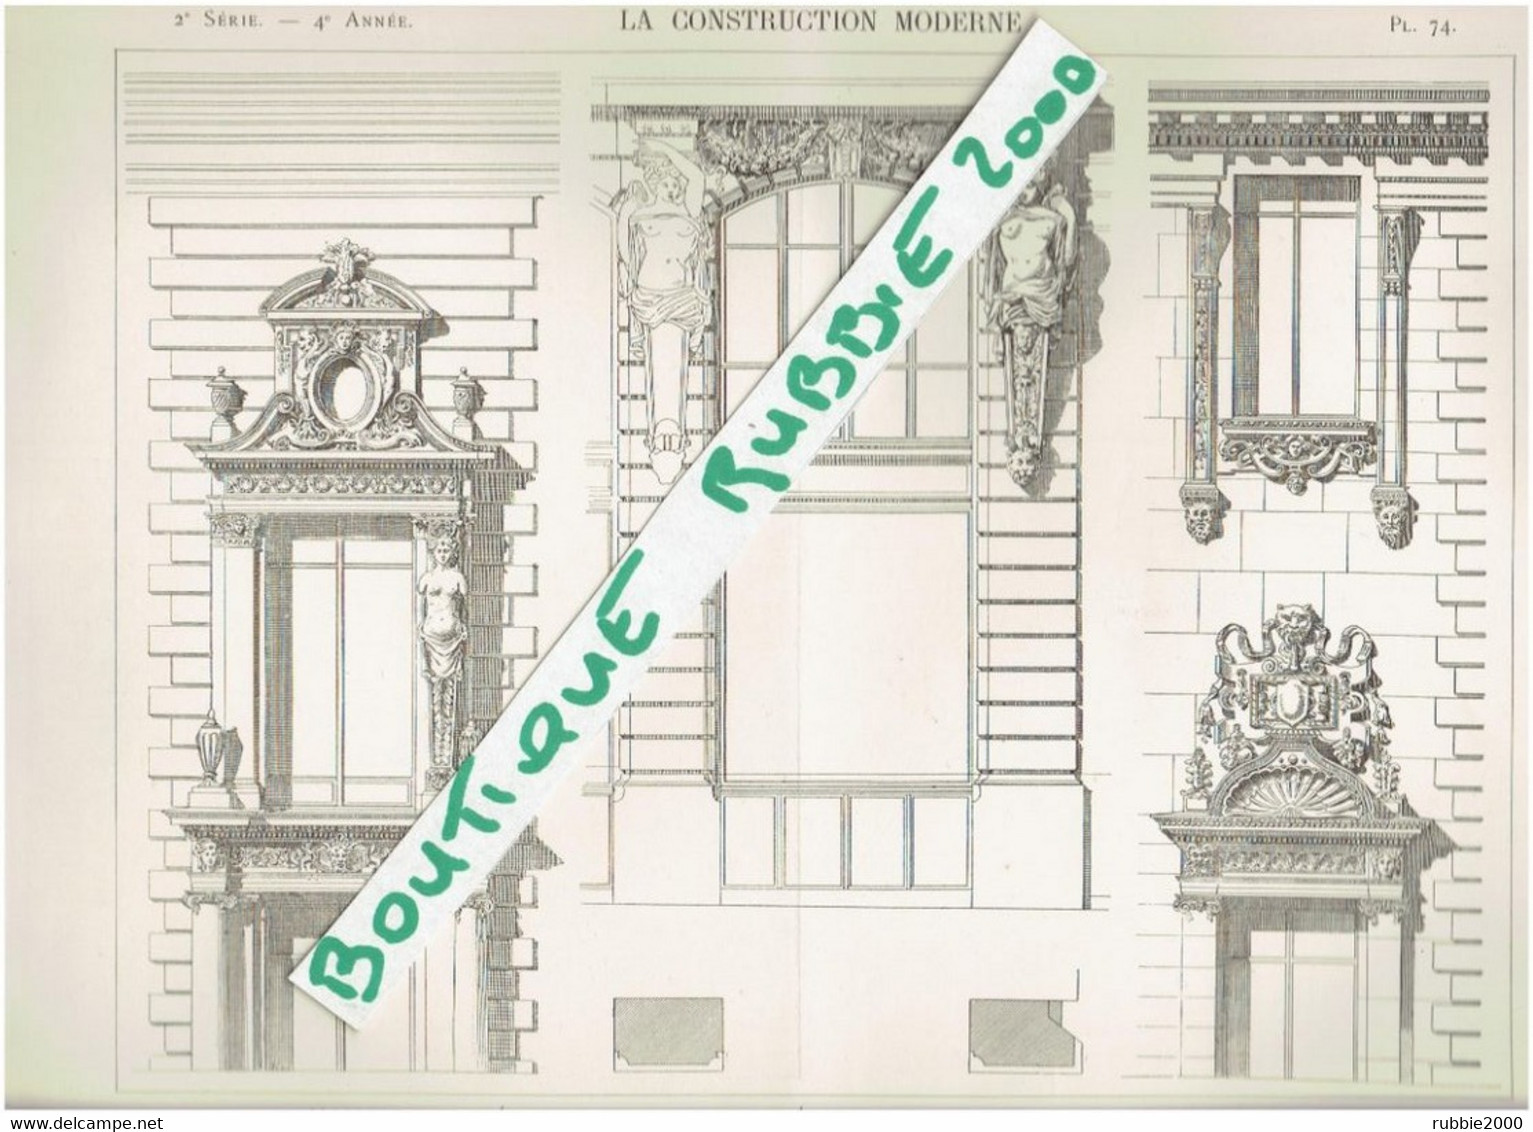 3 PLANS DESSINS 1898 PARIS 2° IMMEUBLE 101 RUE REAUMUR ET RUE DE CLERY ARCHITECTE ALBERT WALWEIN - Parigi